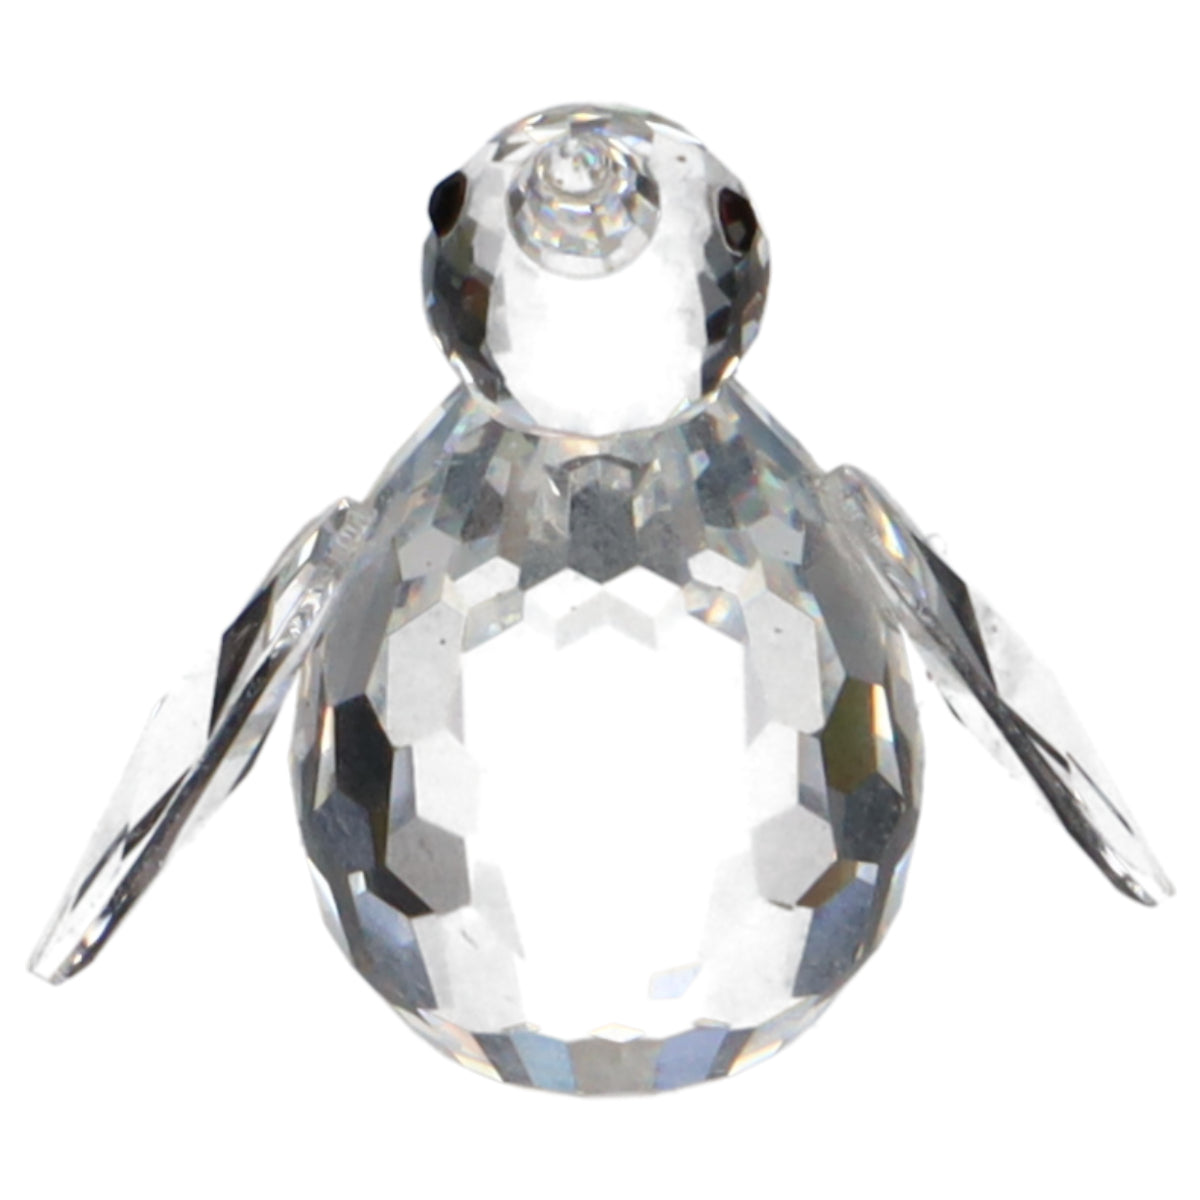 Pinguin H 3,5 cm mit OVP